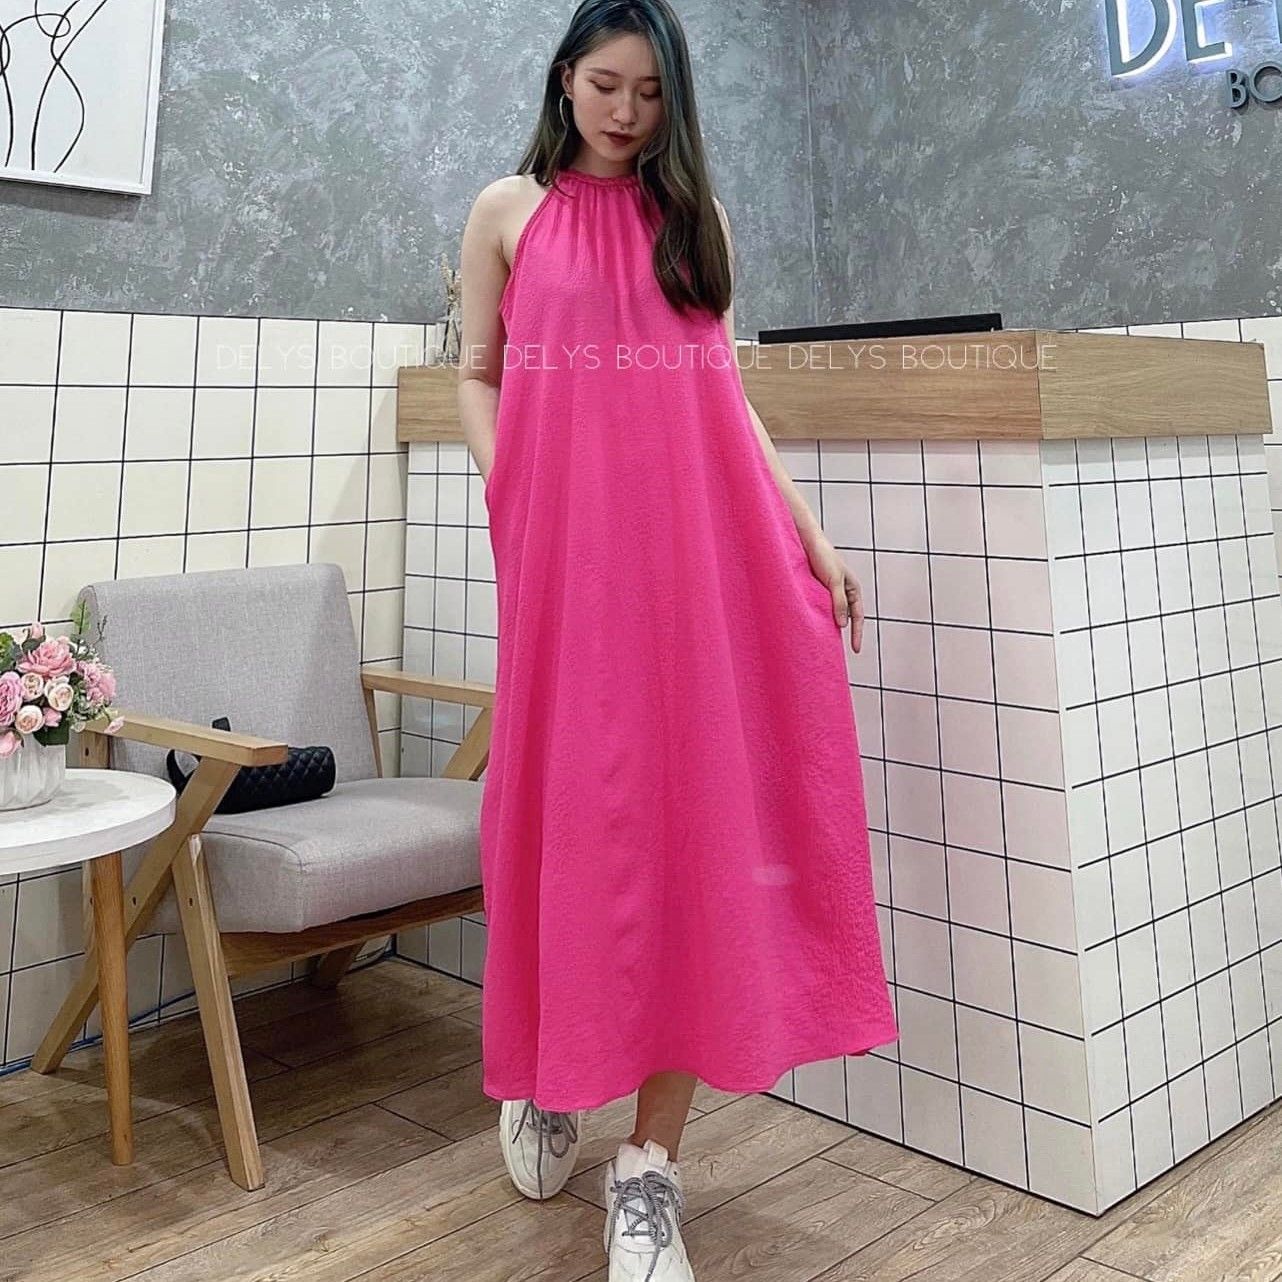 Danh sách 20+ kiểu váy yếm làm chị em tan chảy - XinhXinh.vn